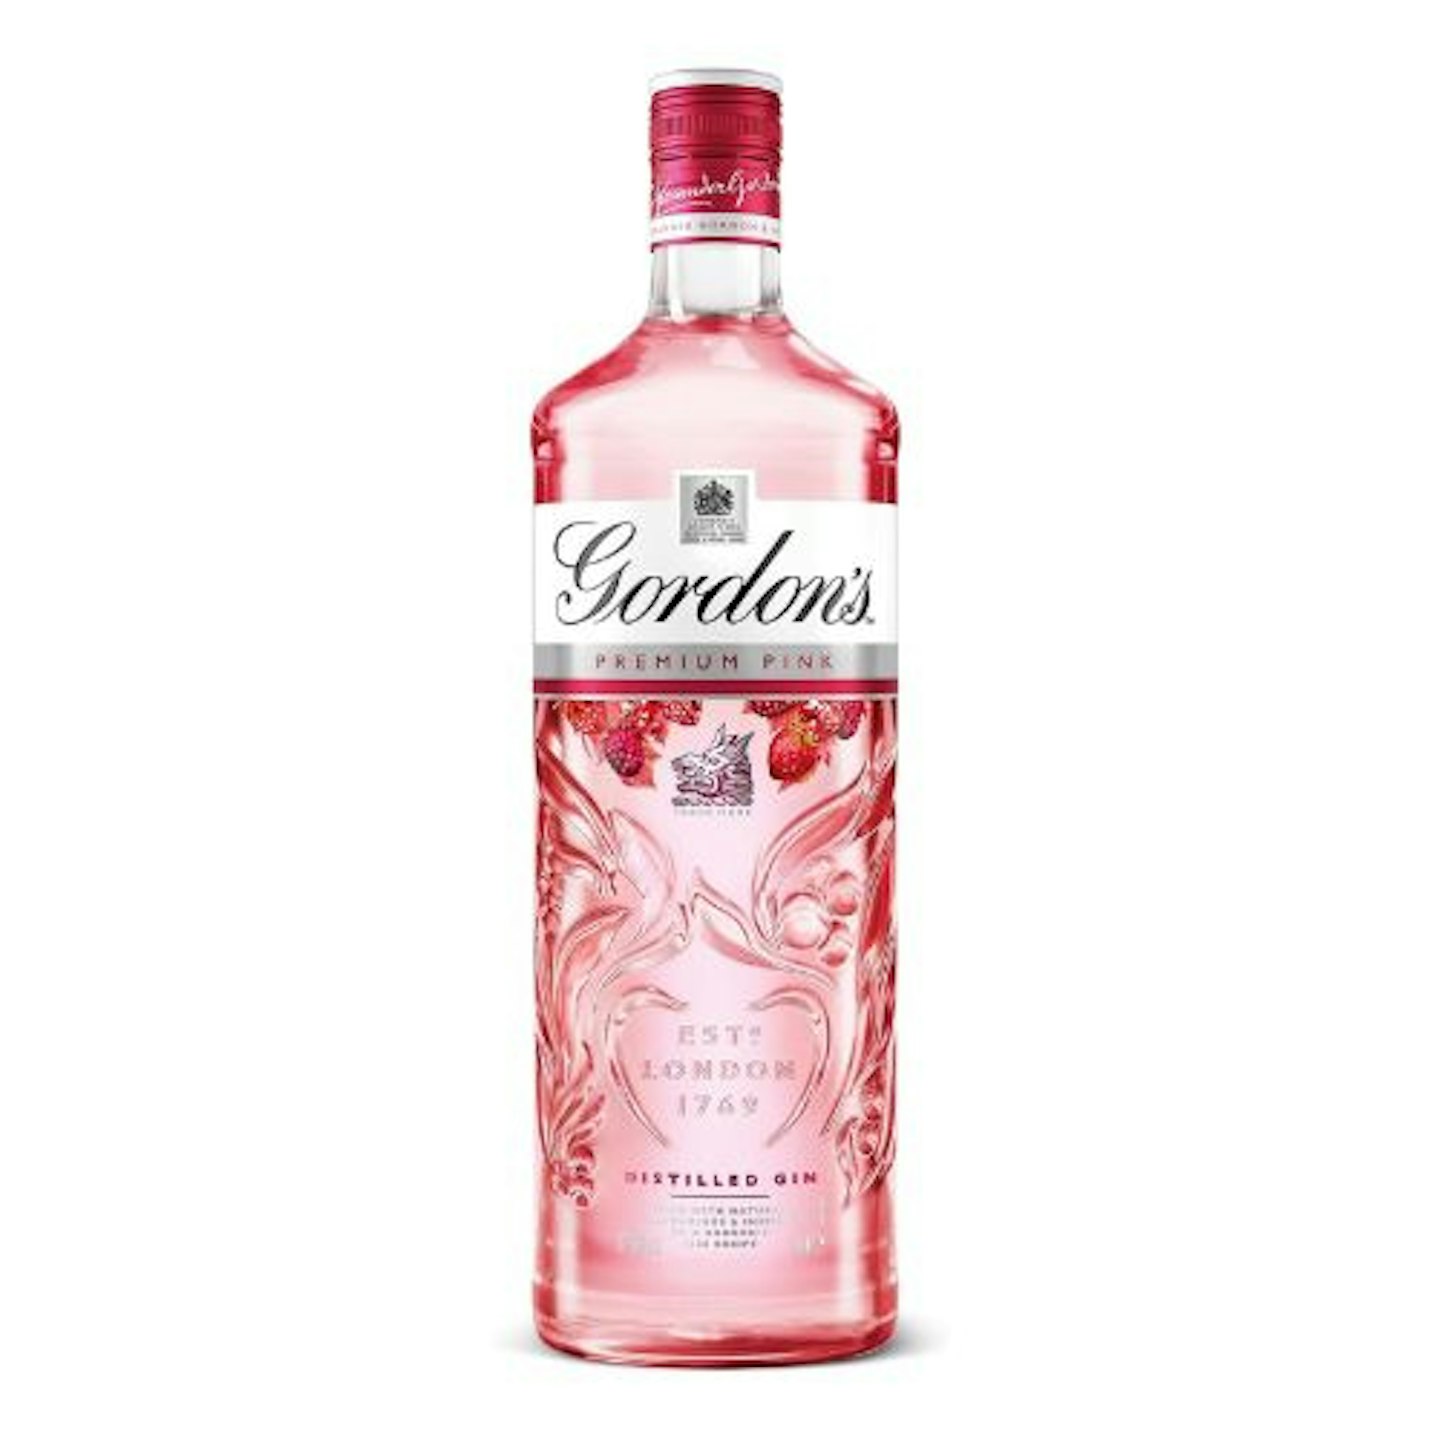 Gordon's Premium Pink Distilled Gin